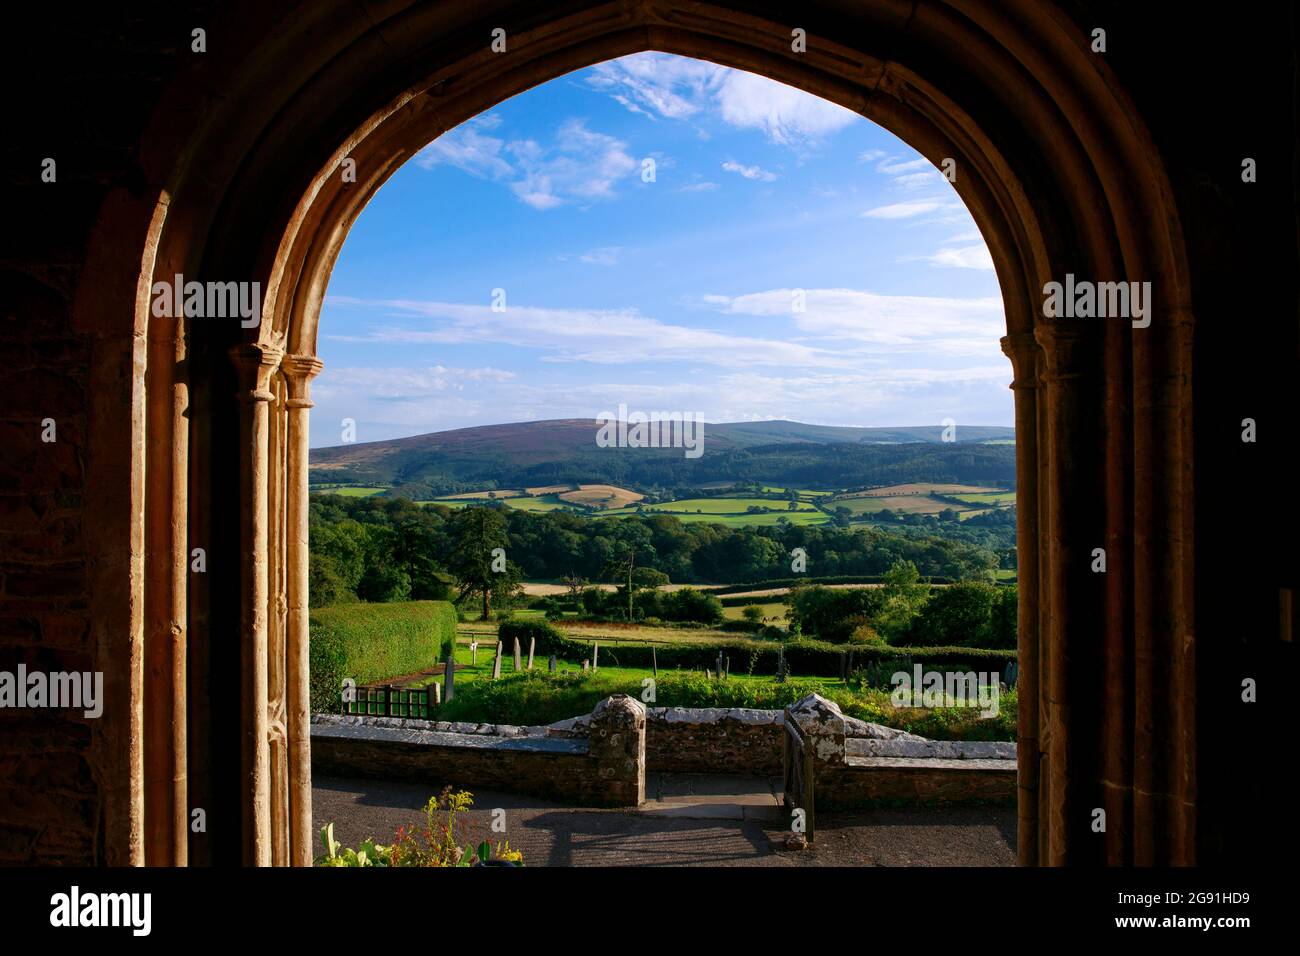 Fenêtre ouverte de l'église avec vue incroyable sur le paysage vert des champs verts. Paysage mobile visible à travers le cadre de la fenêtre. Somerset, Angleterre. Banque D'Images